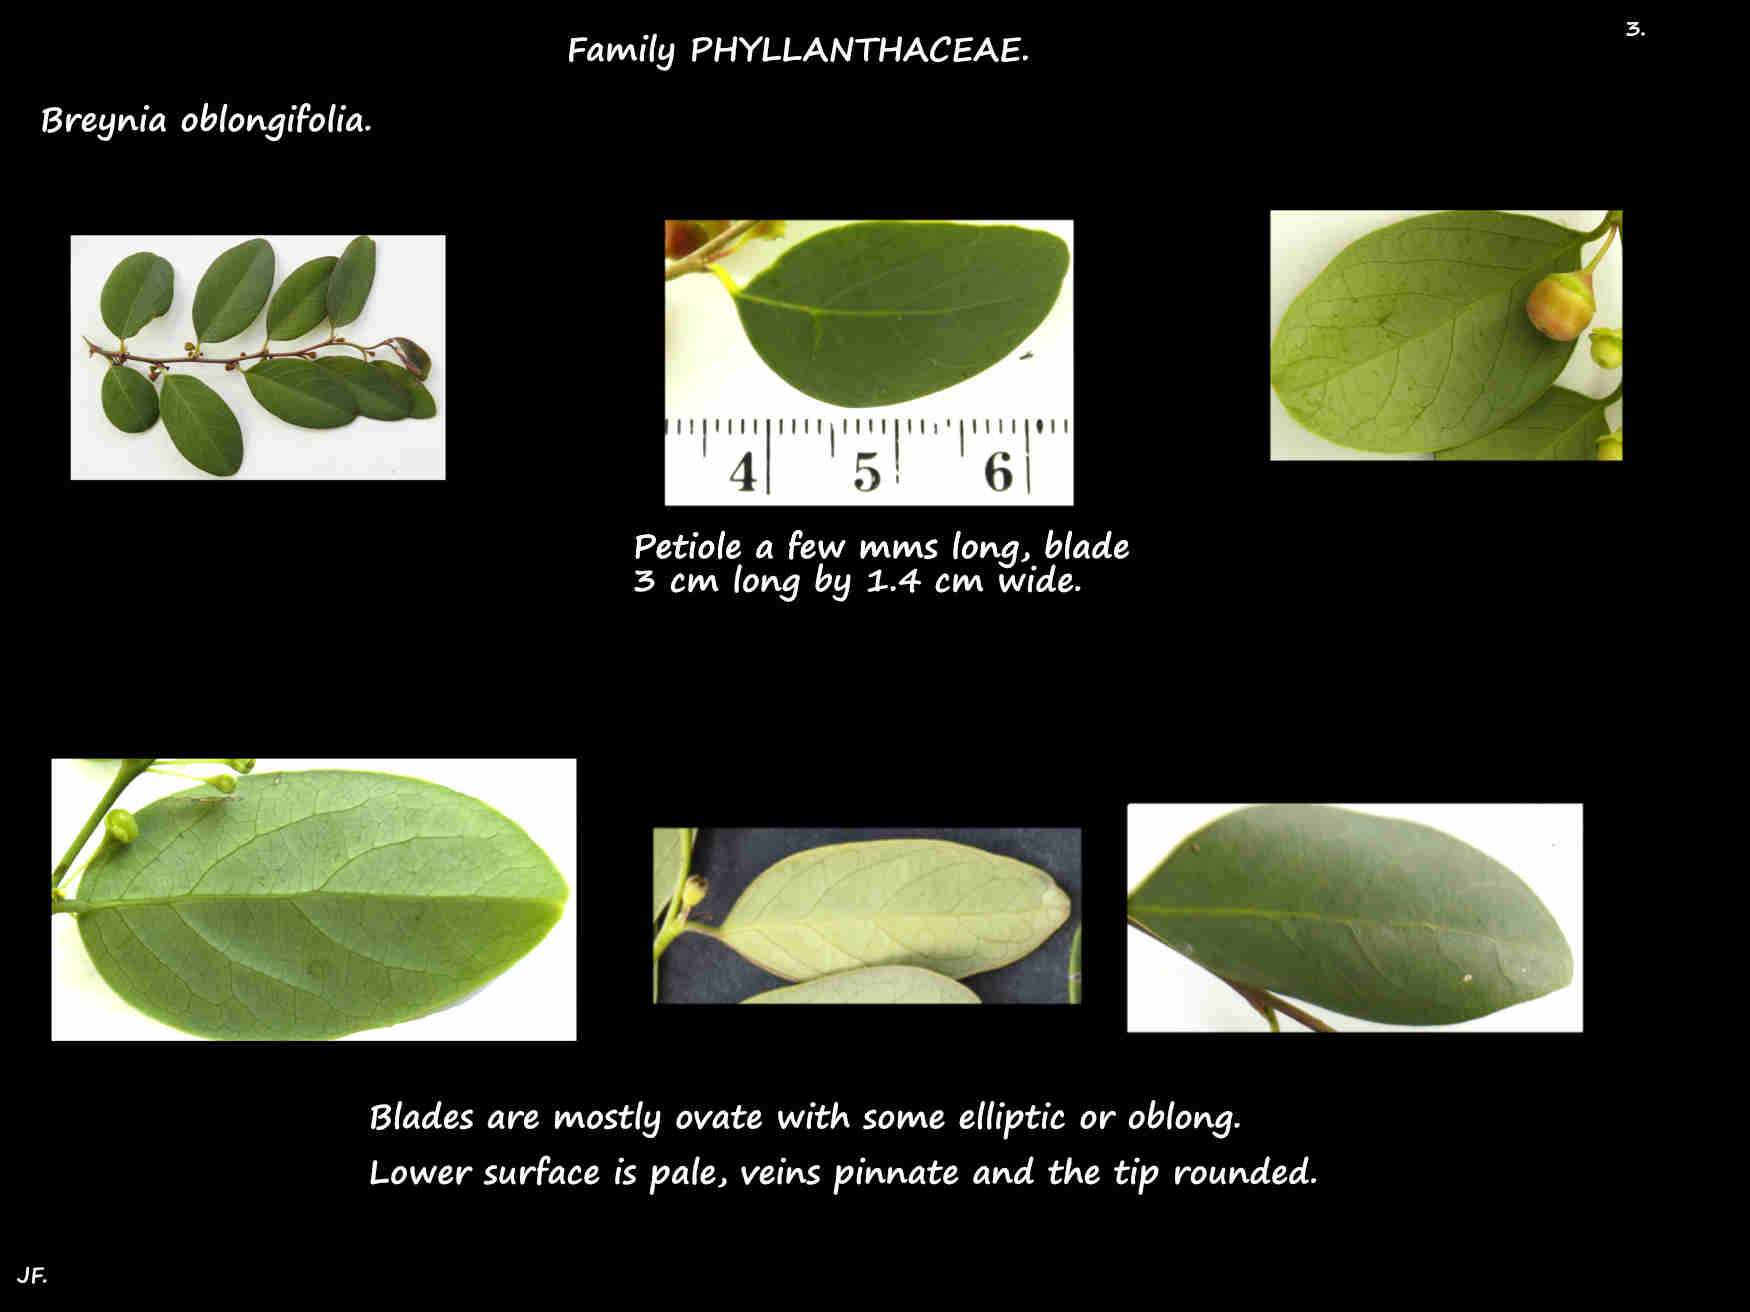 3 Breynia oblongifolia leaves